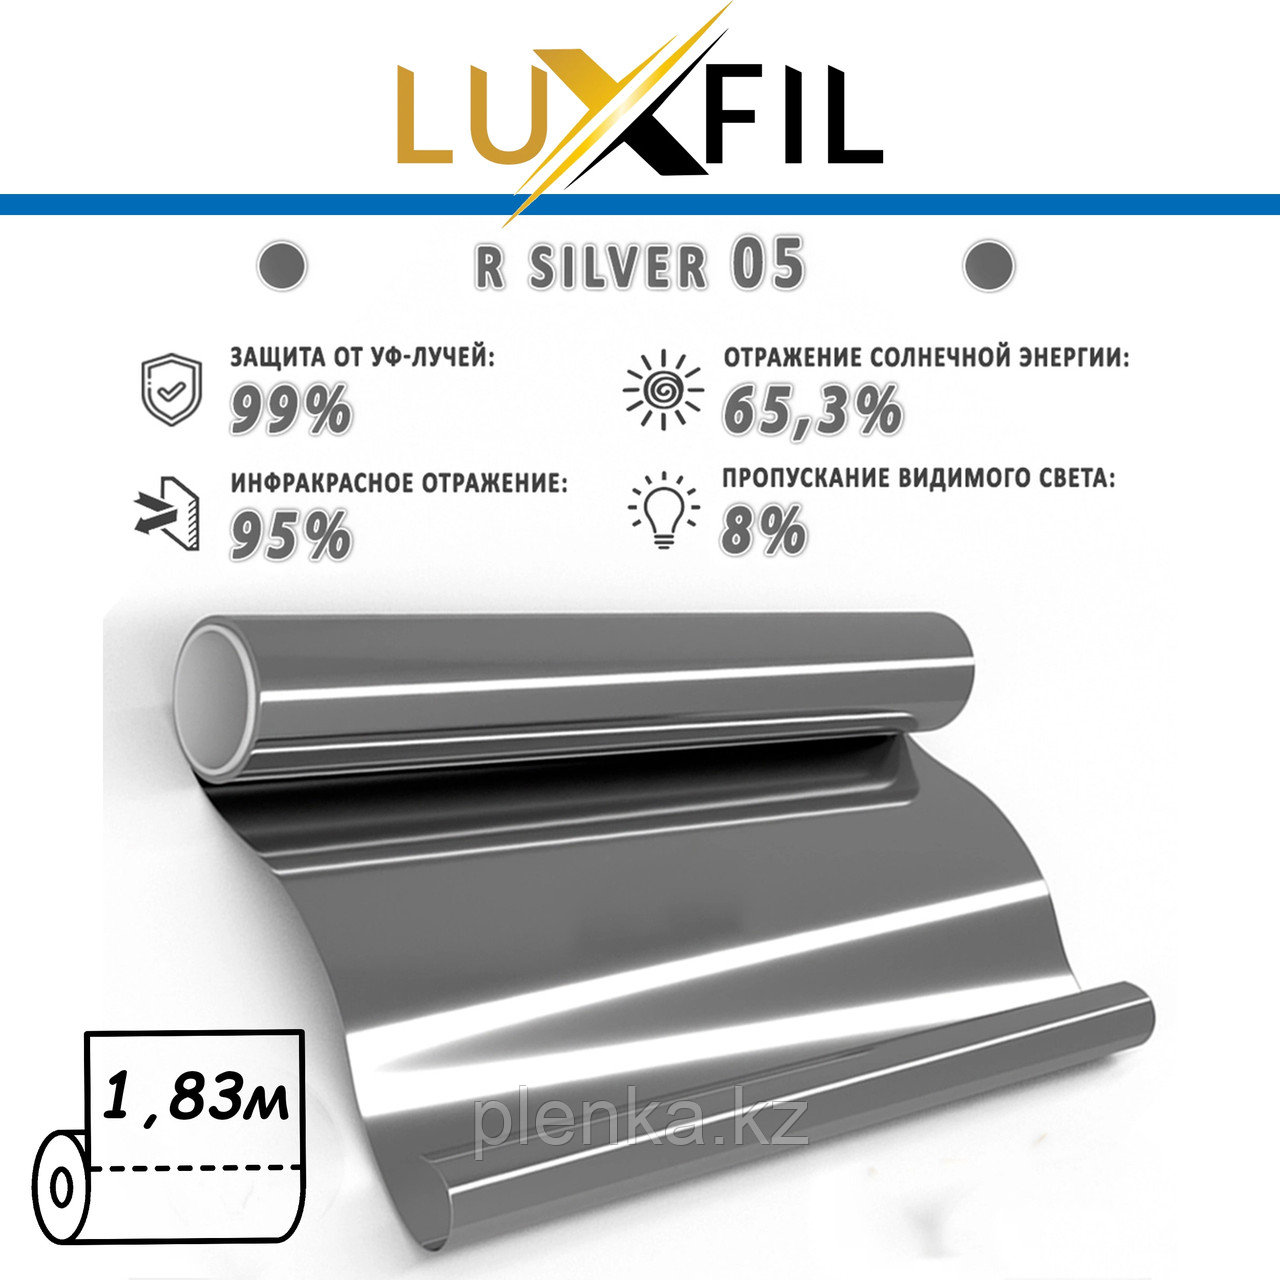 Luxfil Silver 05%, ширина рулона - 1,83м. Цена за 1 рулон.